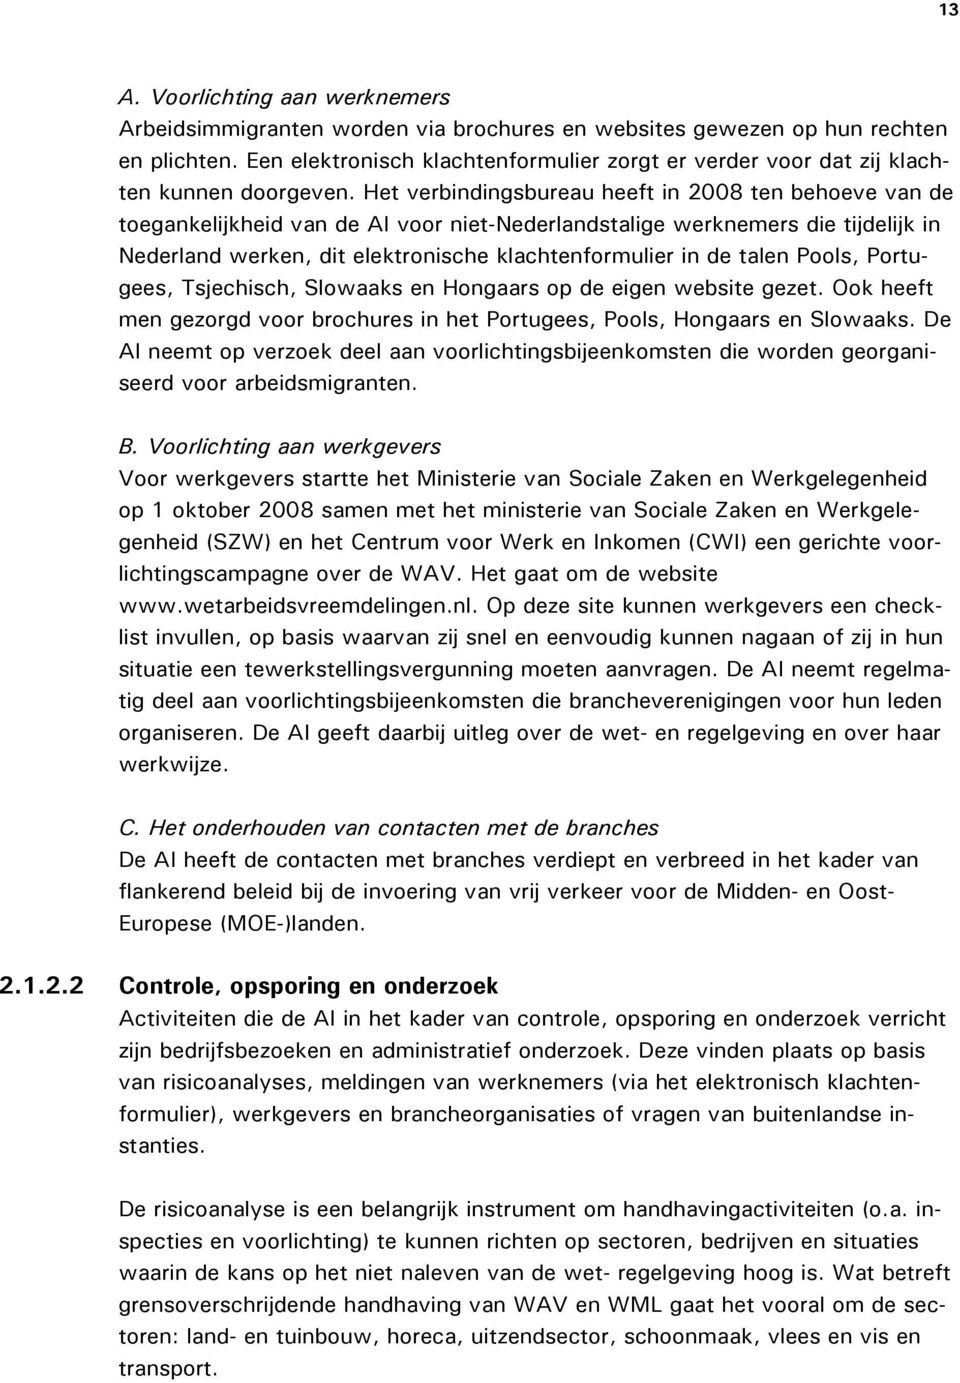 Het verbindingsbureau heeft in 2008 ten behoeve van de toegankelijkheid van de AI voor niet-nederlandstalige werknemers die tijdelijk in Nederland werken, dit elektronische klachtenformulier in de